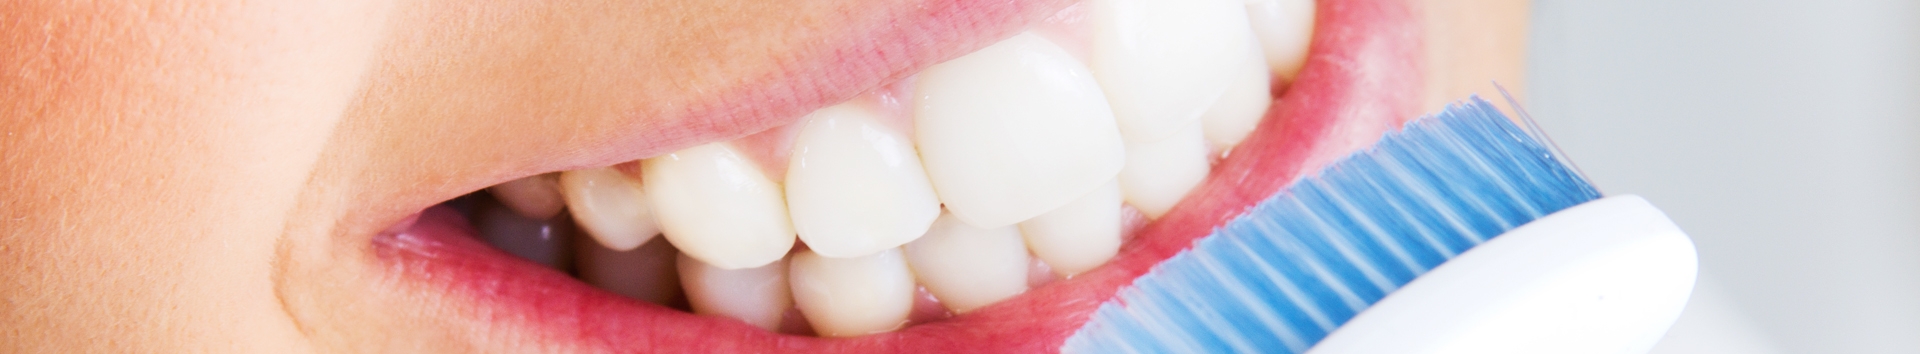 Clareando os dentes em casa: Como um dentista orienta?